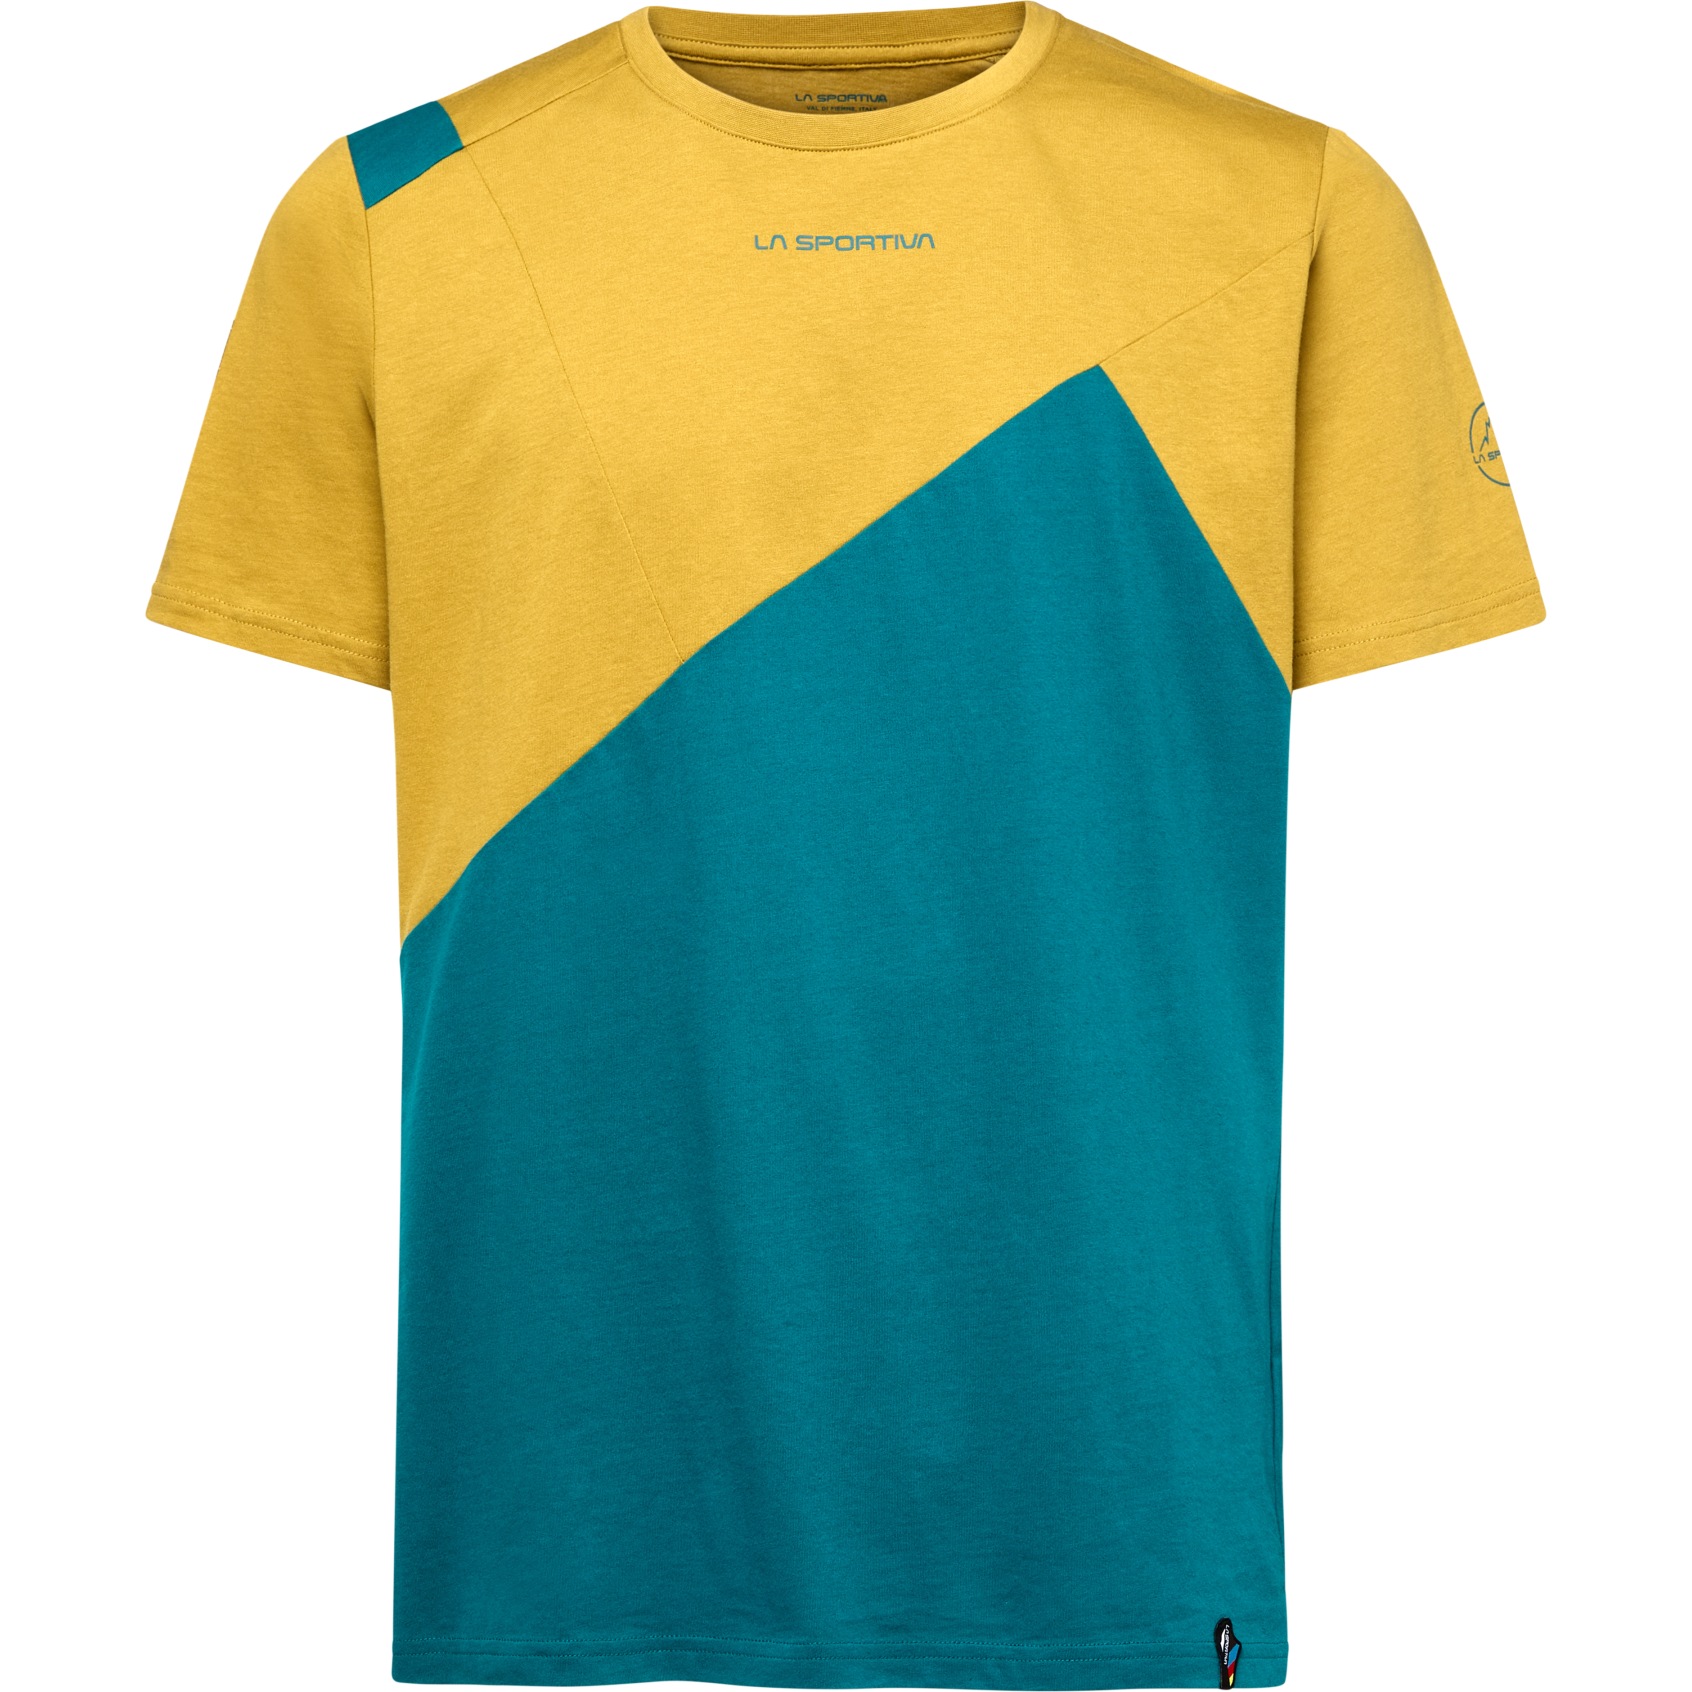 Produktbild von La Sportiva Dude T-Shirt Herren - Everglade/Savana